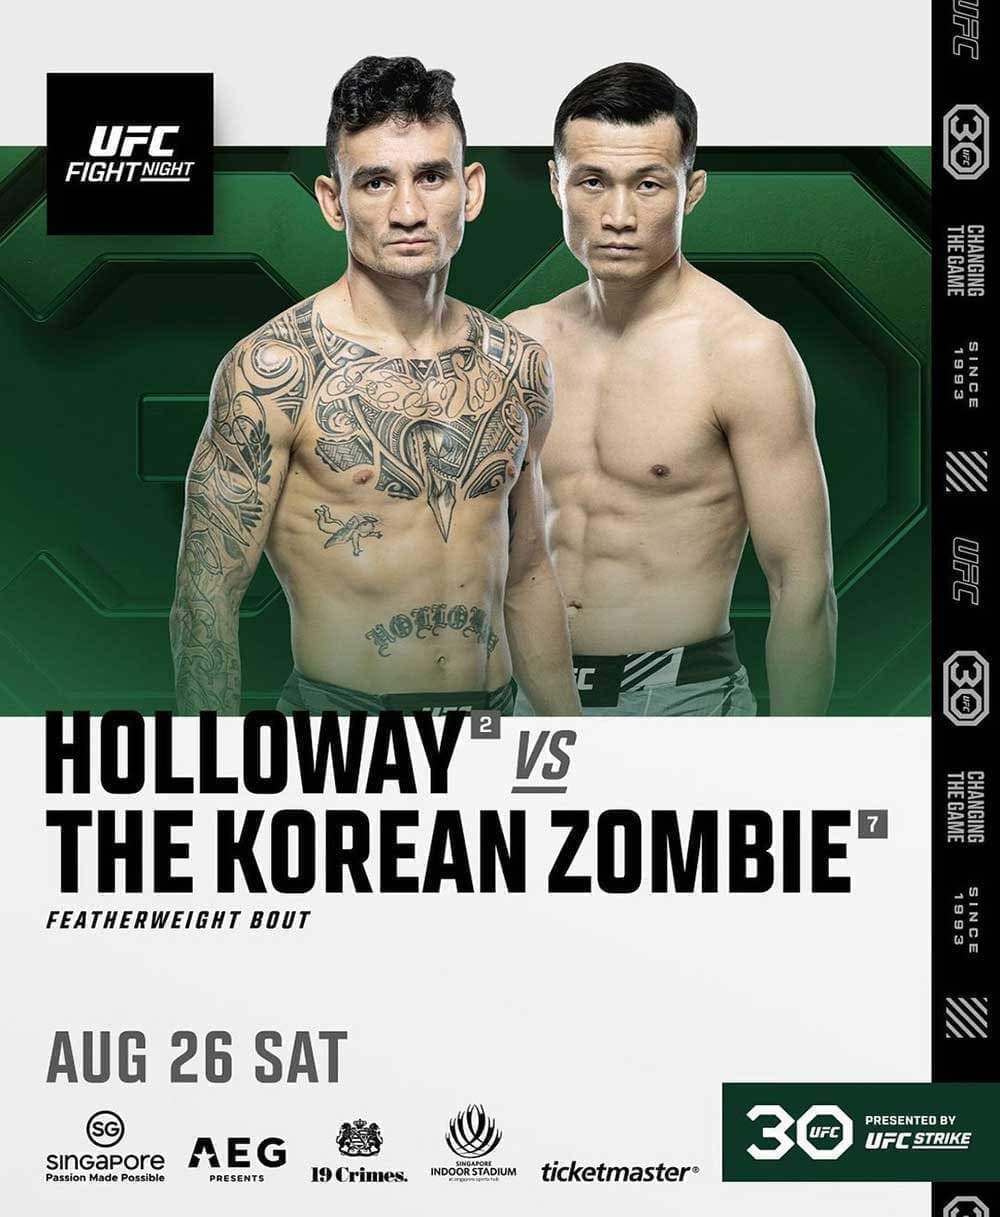 UFC Fight Night 225: Холловэй - Корейский Зомби дата проведения, кард, участники и результаты